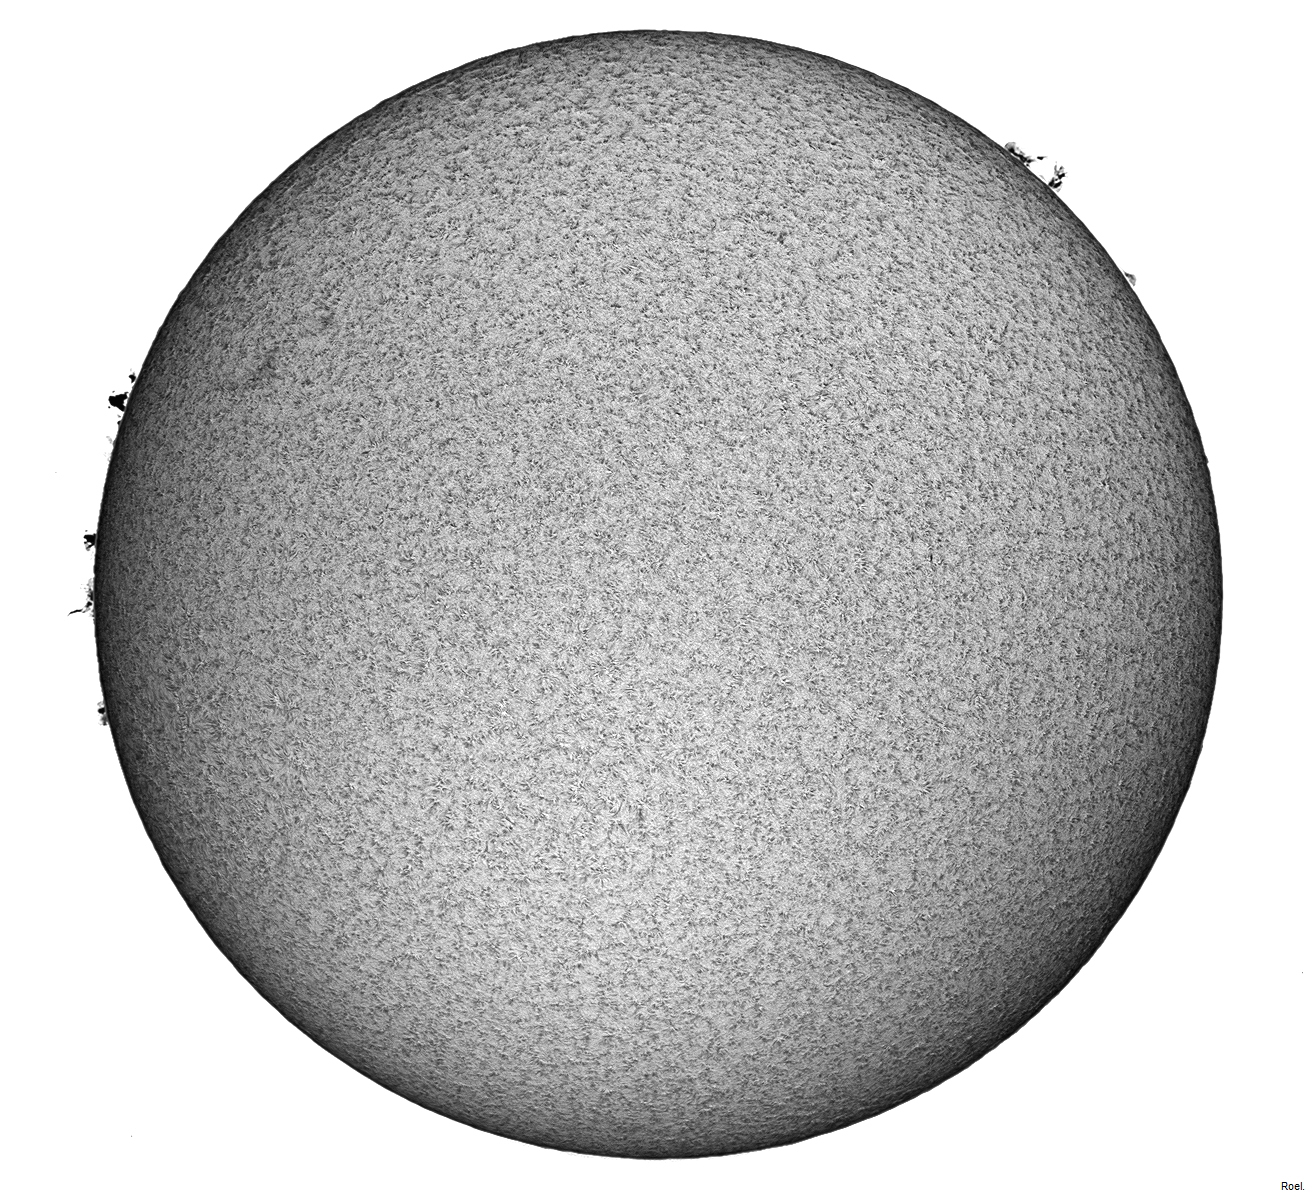 Sol del 25 de octubre del 2018-Solarmax 90-DS-BF30-1mix.jpg